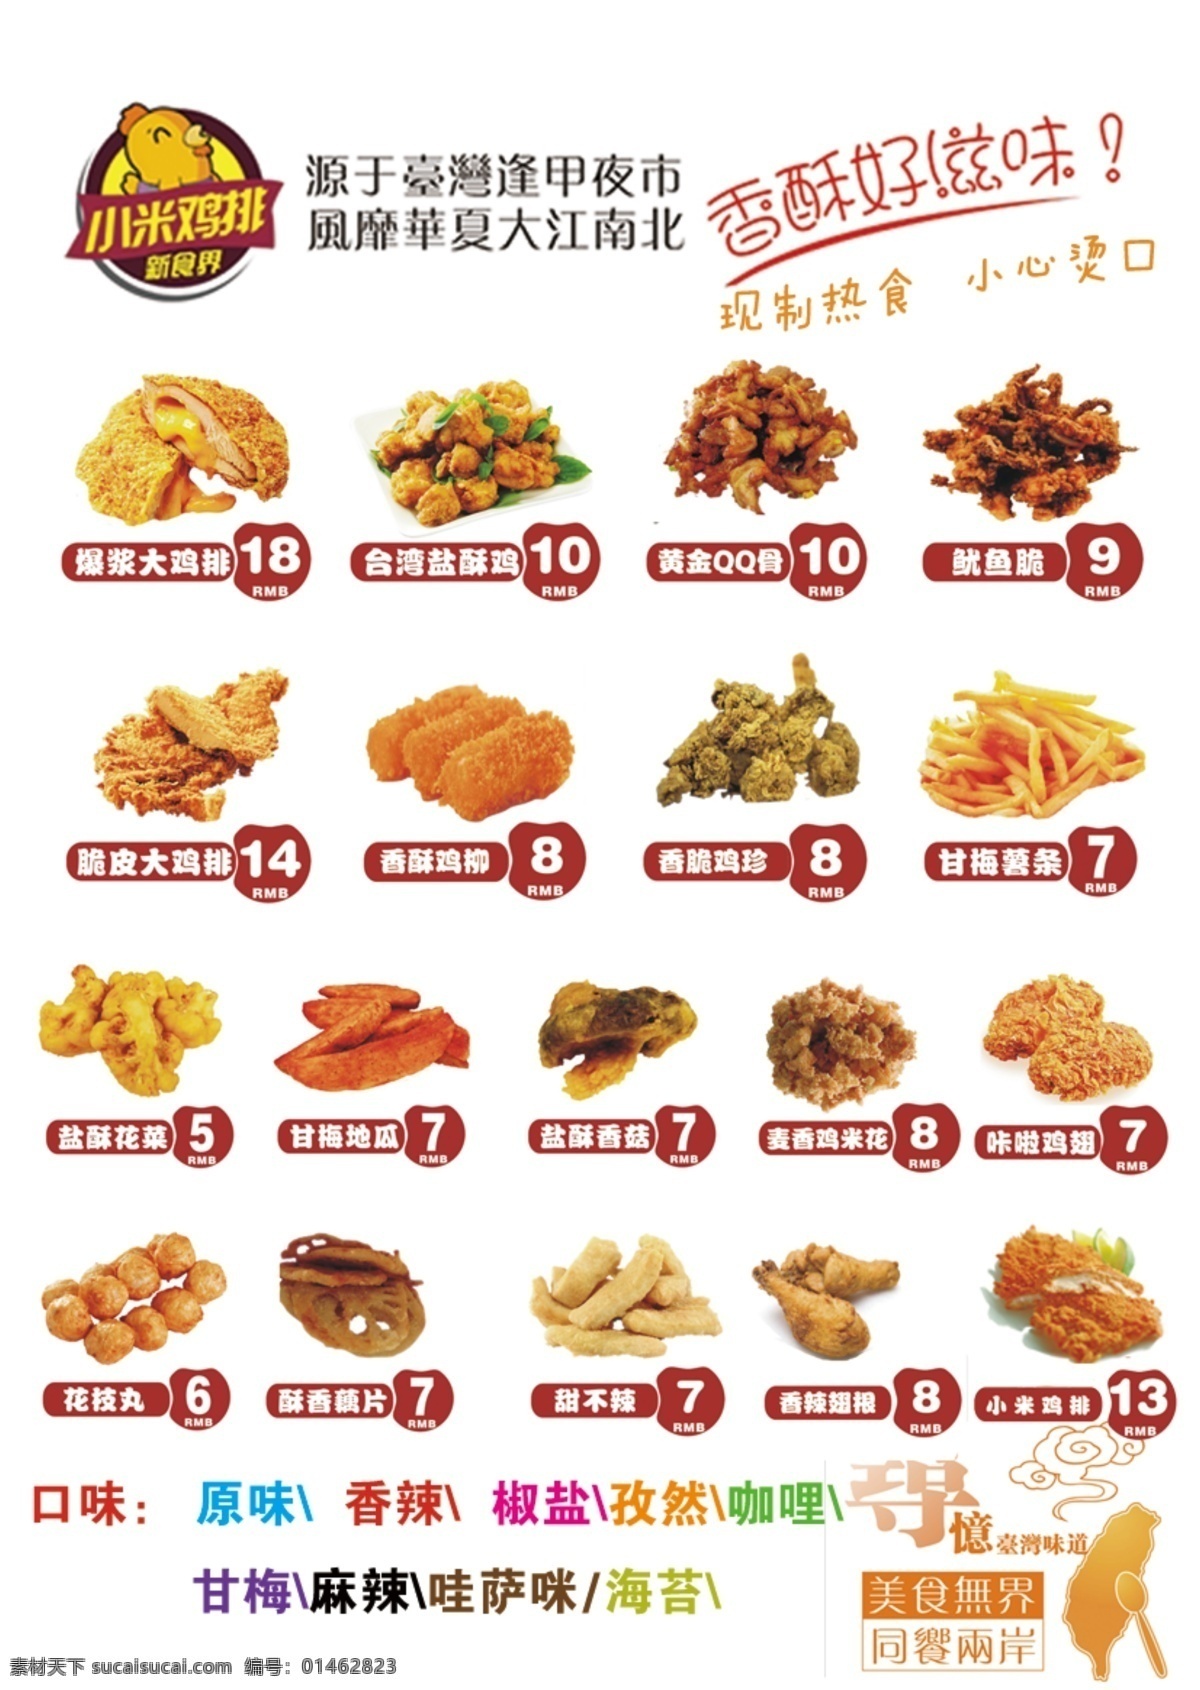 小米鸡排 产品分类 小米 鸡排 产品 分类 高清楚 菜单菜谱